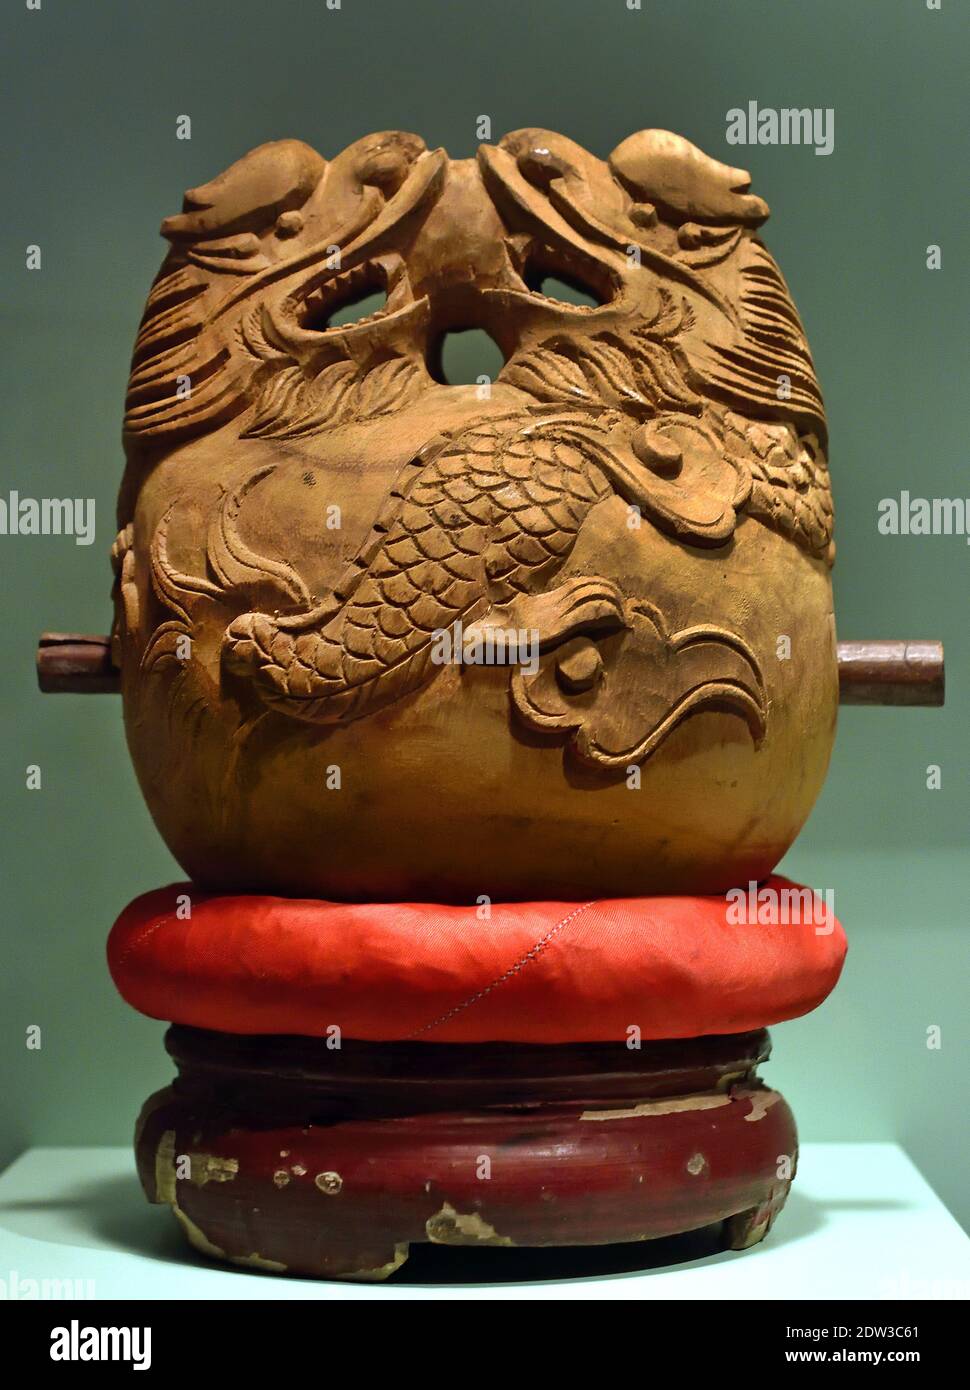 Glocke mit hölzernen Stürmer ( Holz Hanoi, Nord-Vietnam, Anfang 20th Jahrhundert Vietnamesen ( zwei Drachen stehen auf der Glocke halten eine Perle. Das chinesische Motiv bezieht sich auf Weisheit und Blitz) Stockfoto